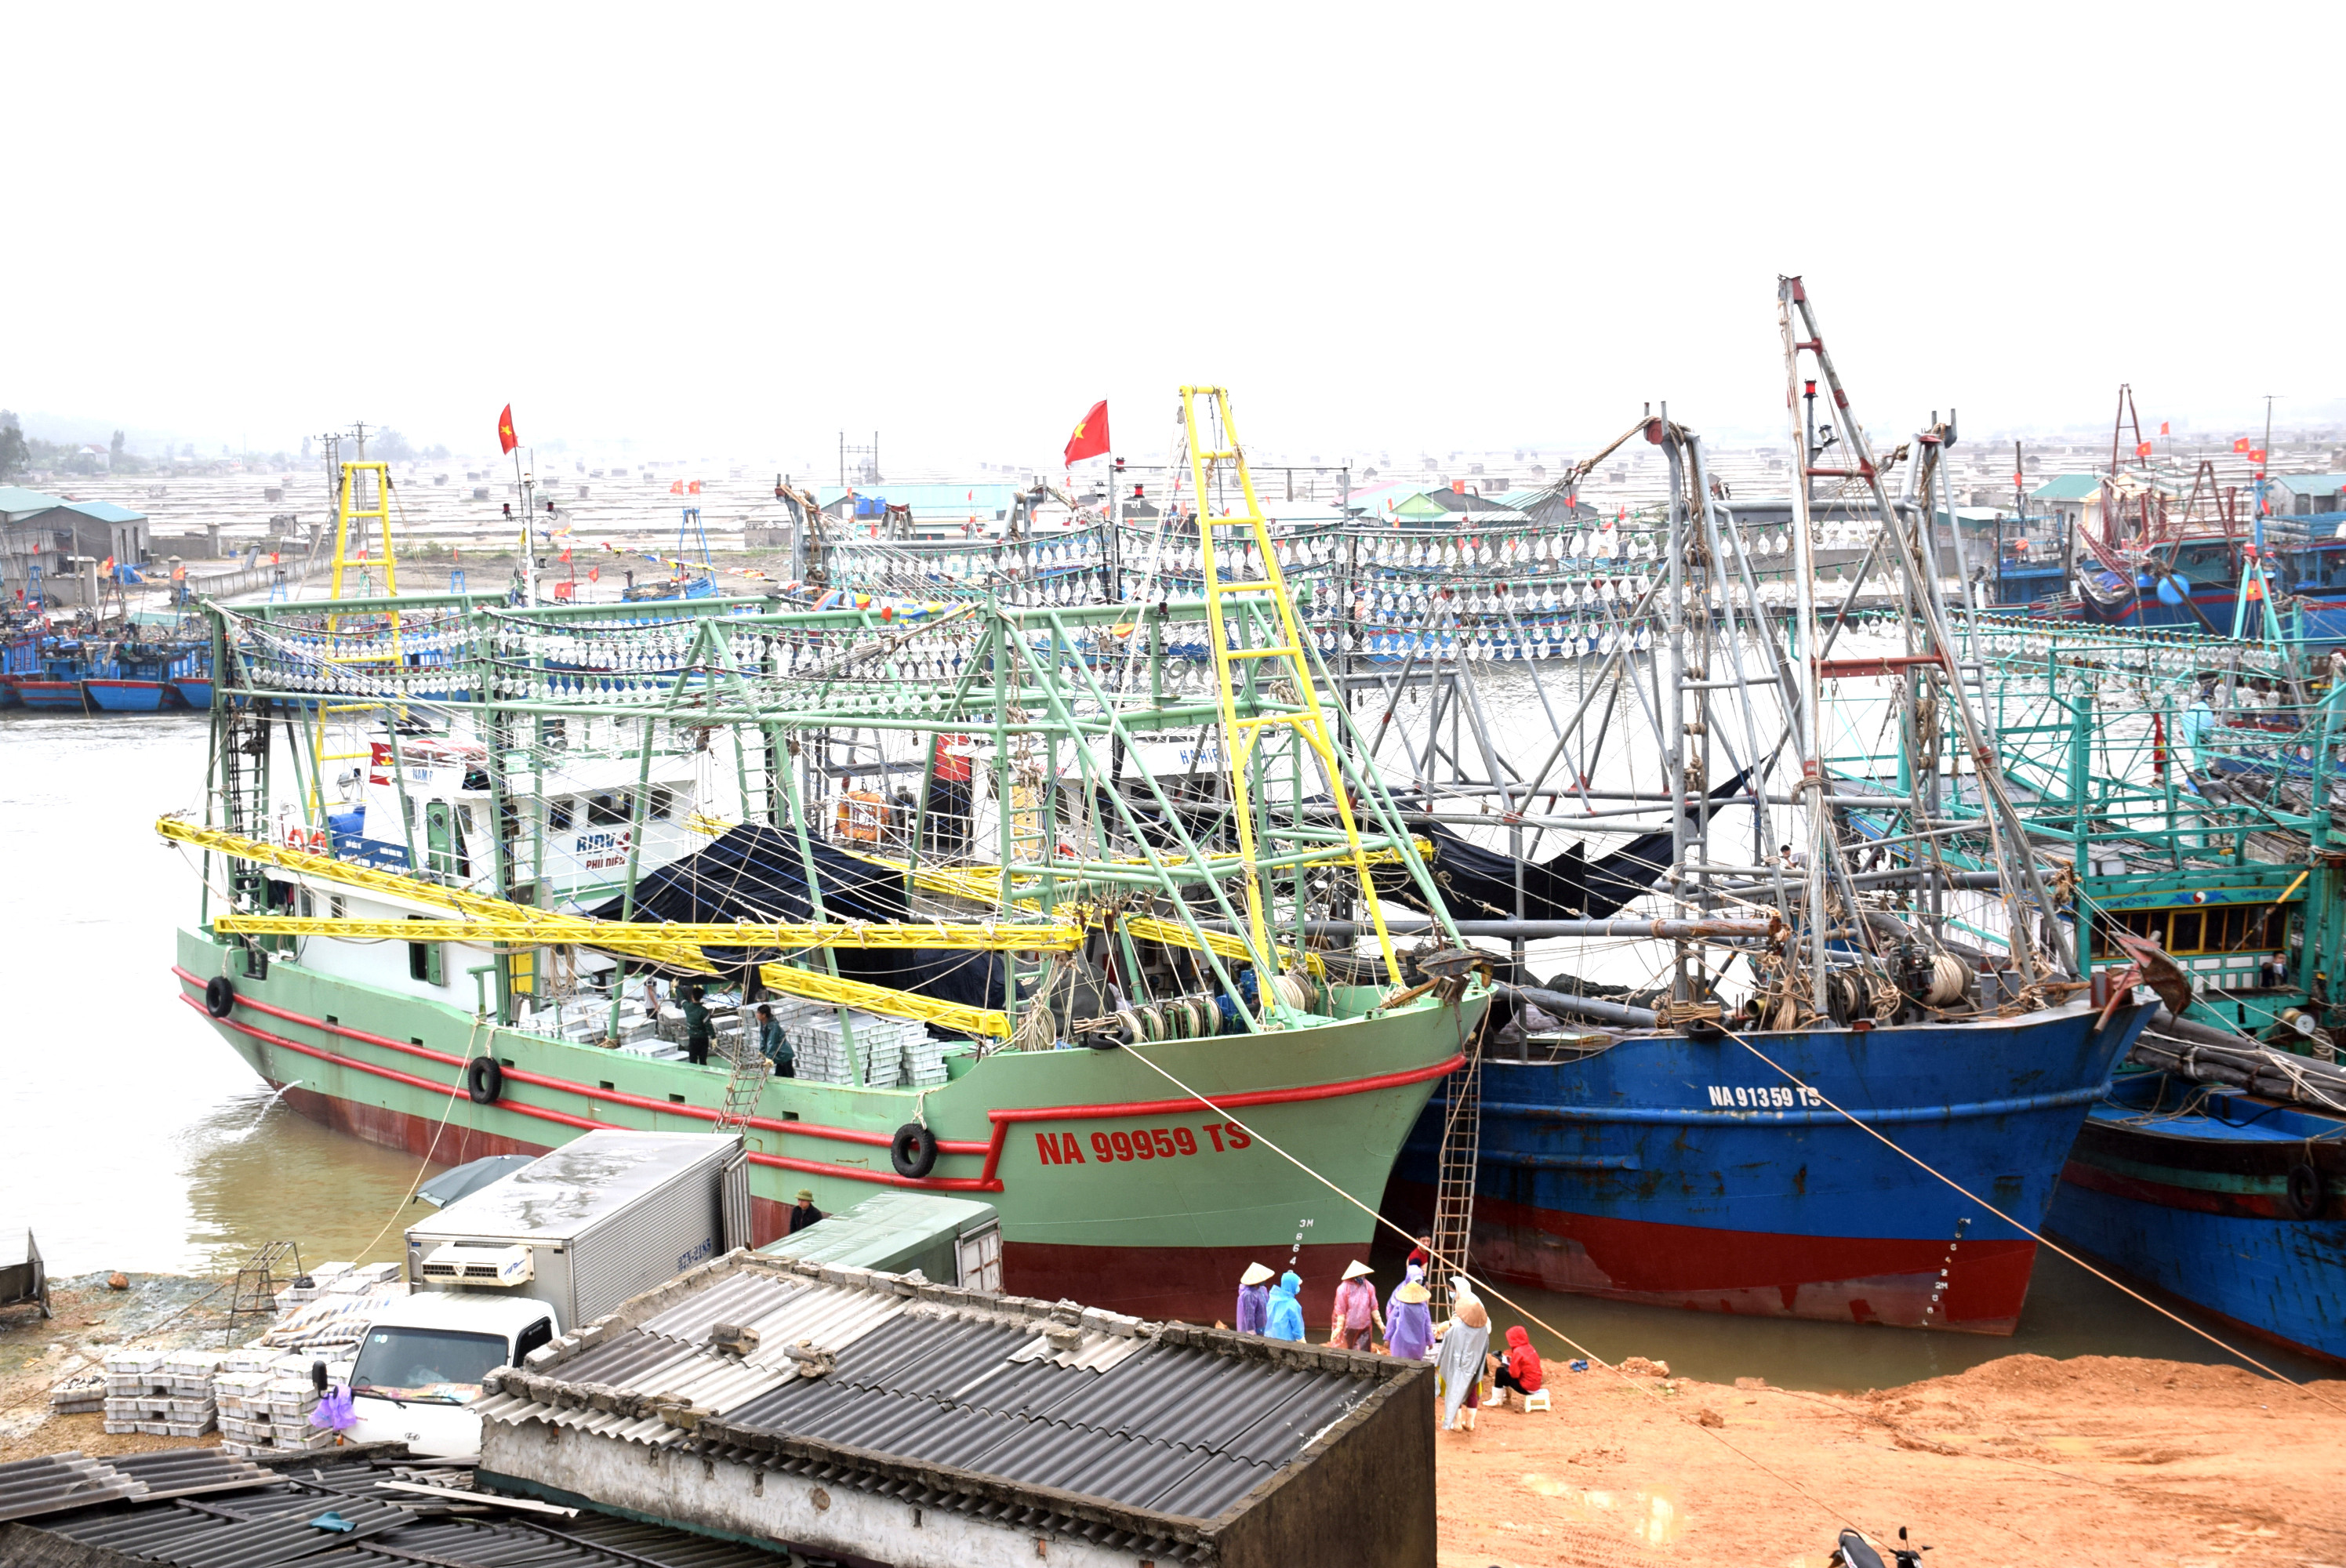 Cảng cá Lạch Quèn huyện Quỳnh Lưu tới đây sẽ được nhà nước đầu tư 200 tỷ đồng để nâng cấp. Ảnh: Xuân Hoàng